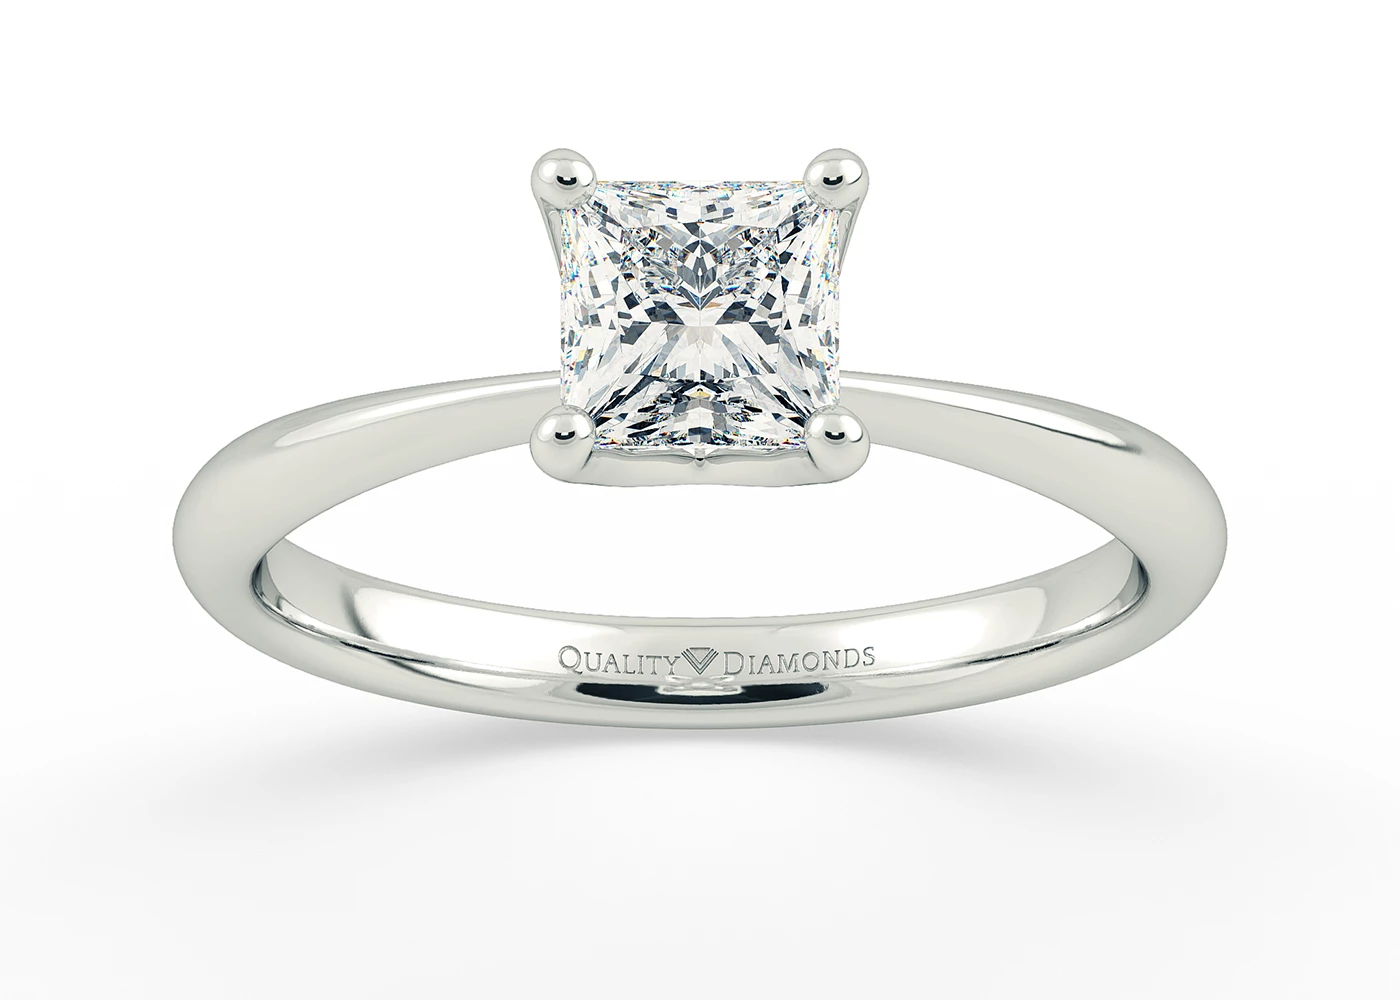 Princess Amorette Diamond Ring in Platinum